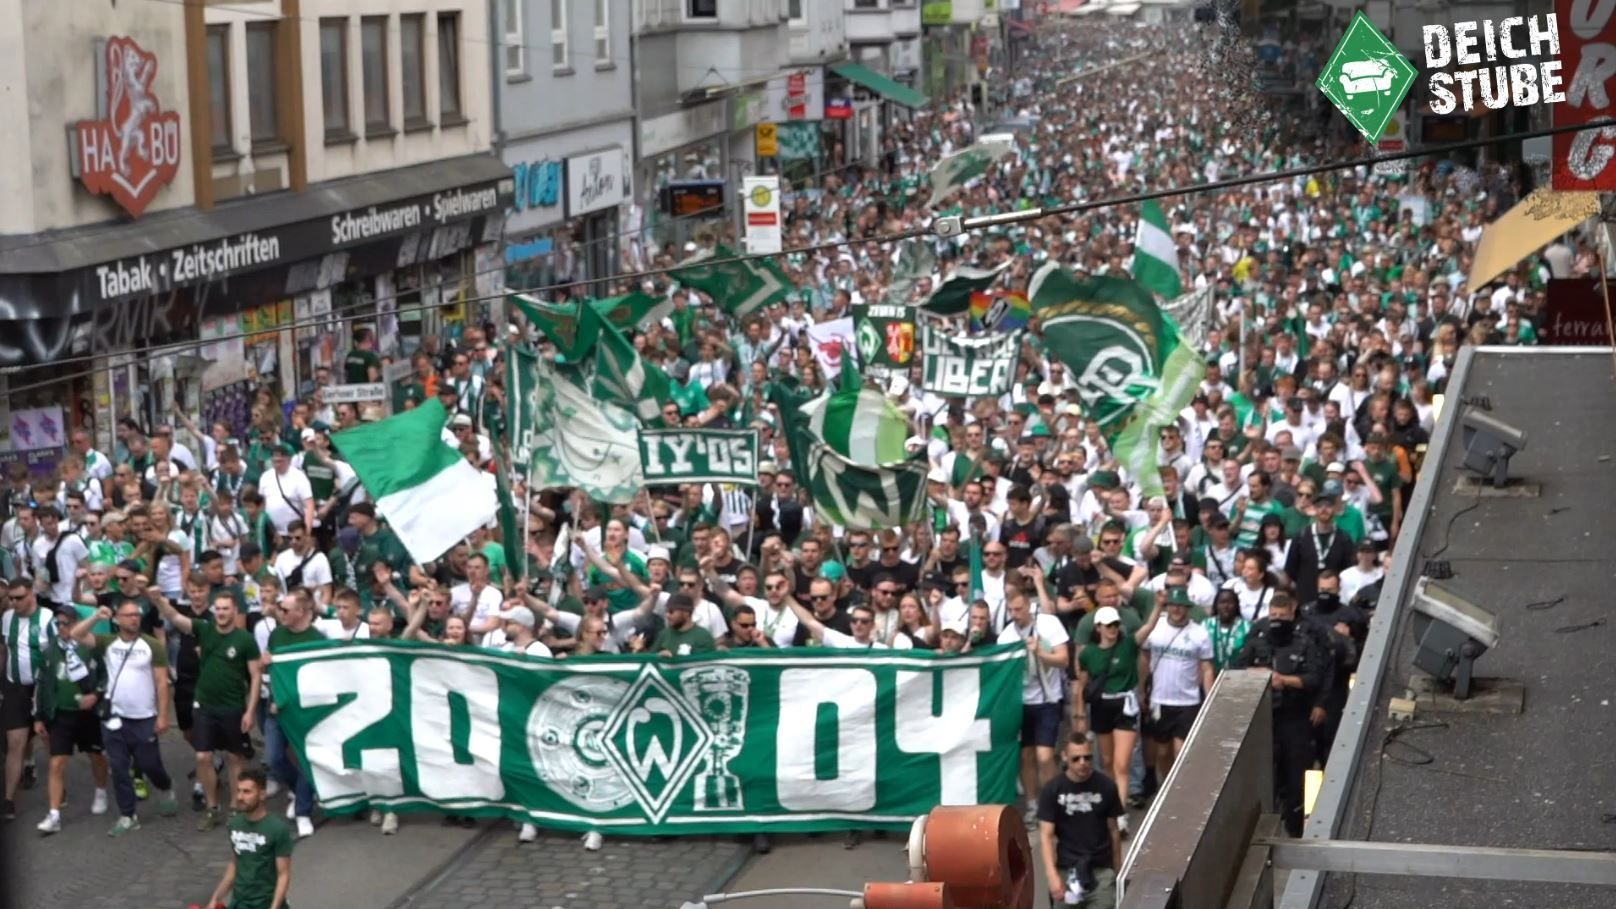 Gänsehaut! So lief der Werder-Fanmarsch vor dem Bundesliga-Finale gegen Bochum!